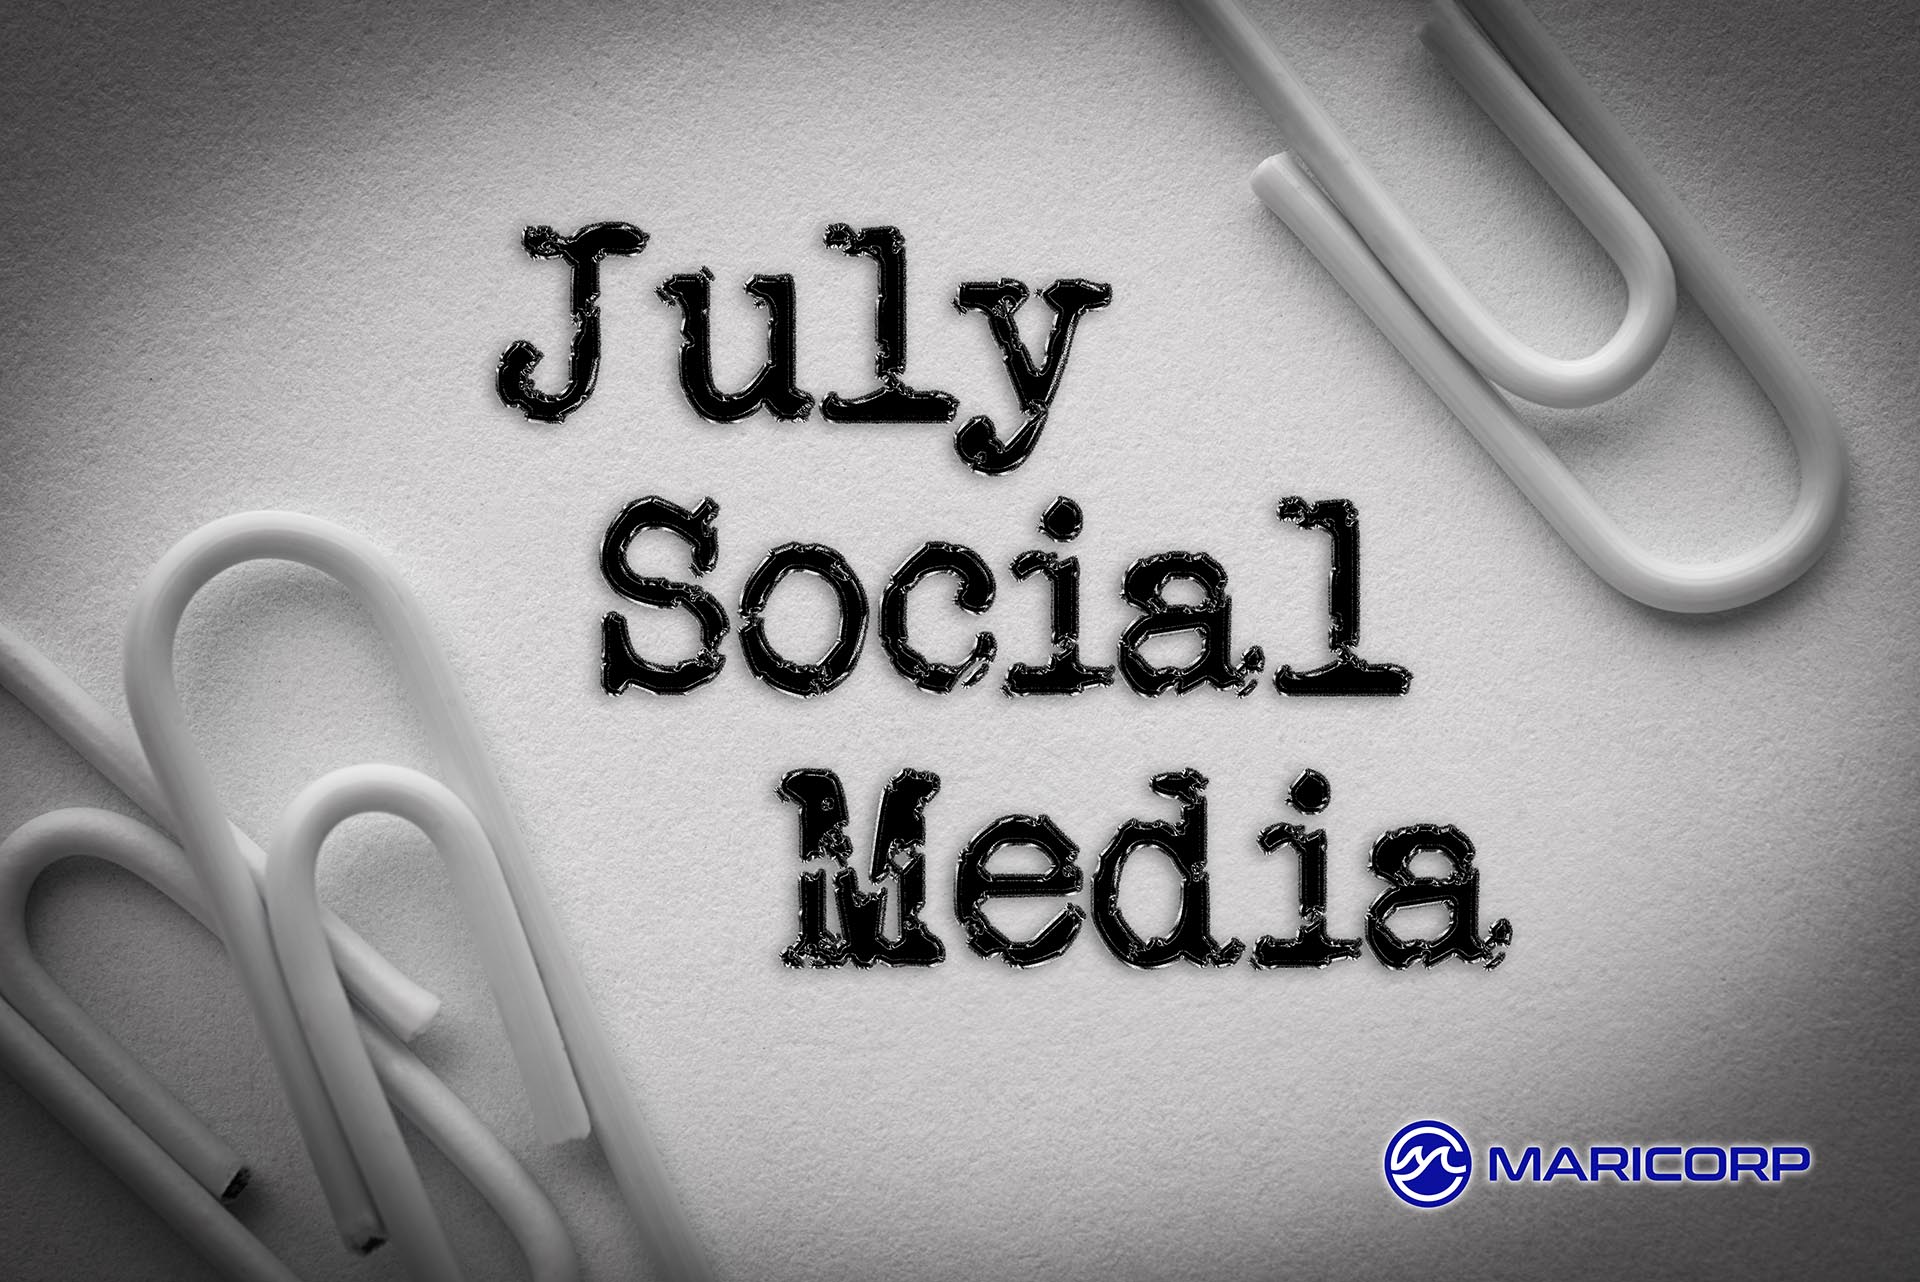 July Social Media Event Ideas